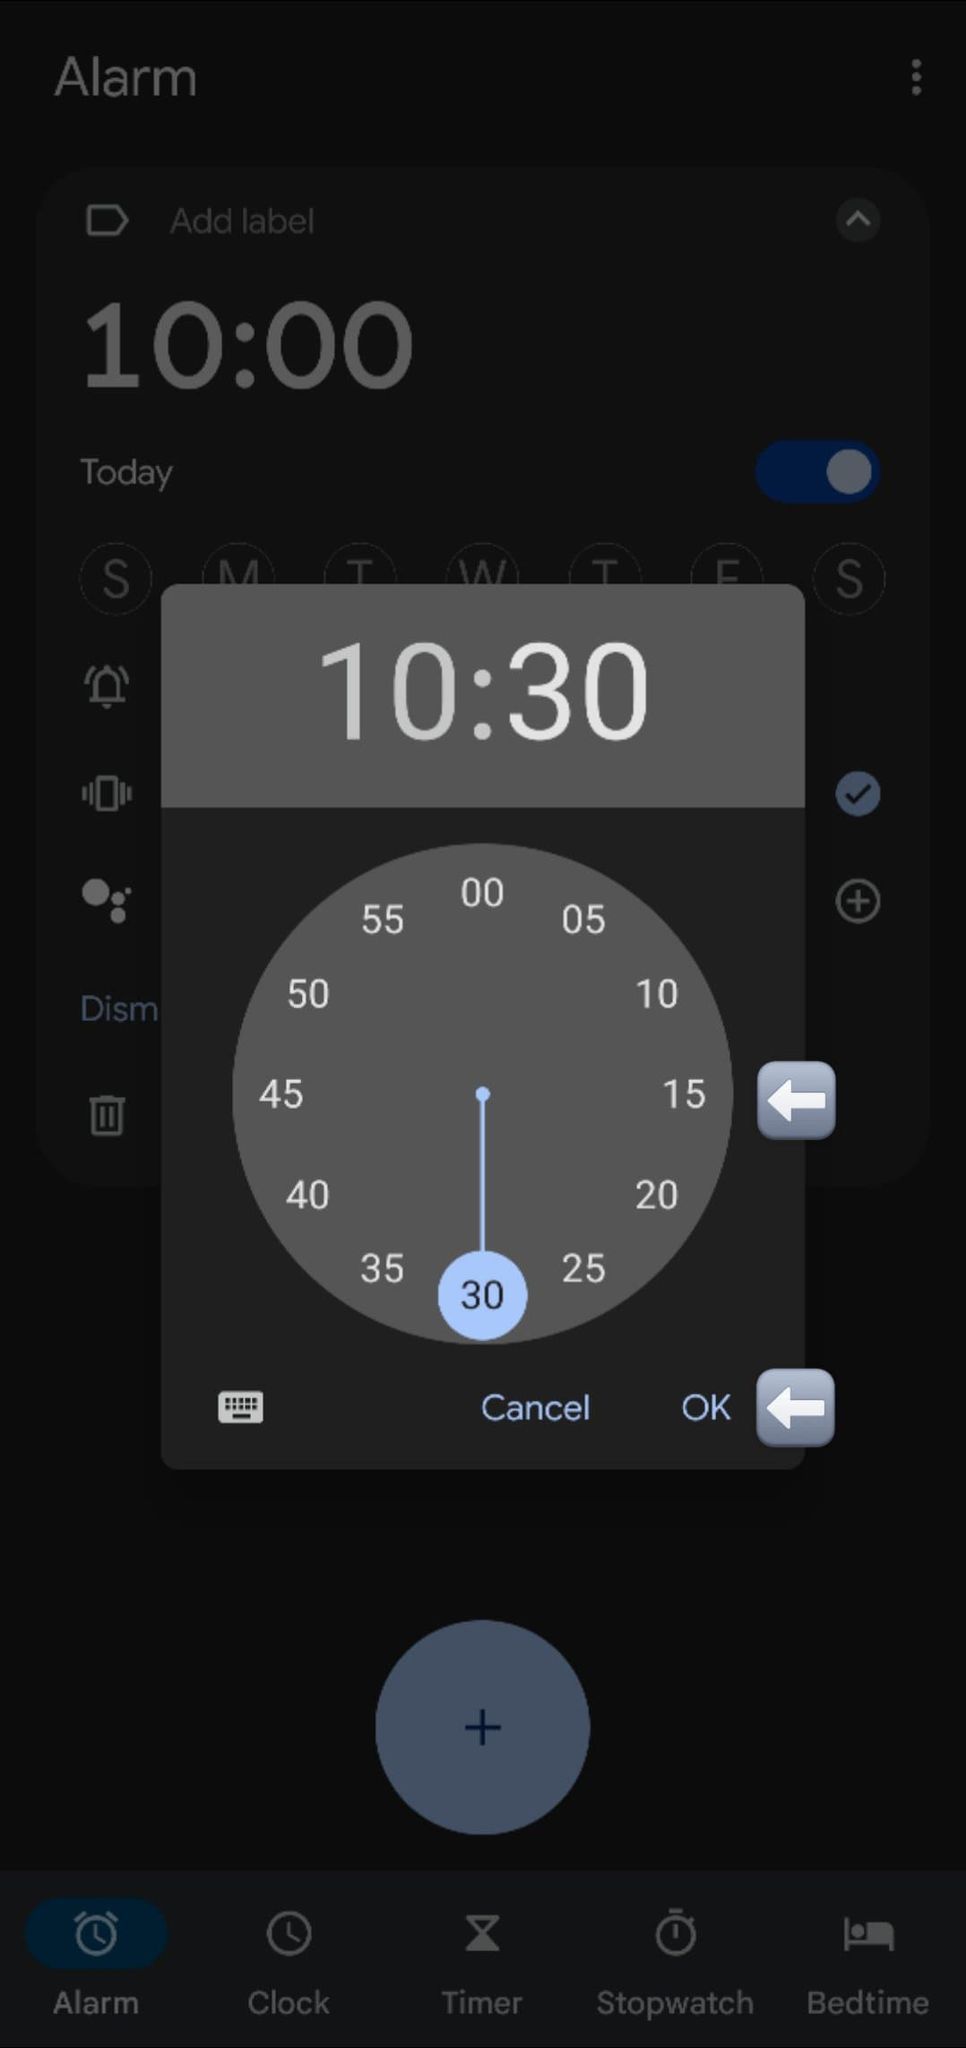 Captura de tela do ajuste da hora definida para o alarme.